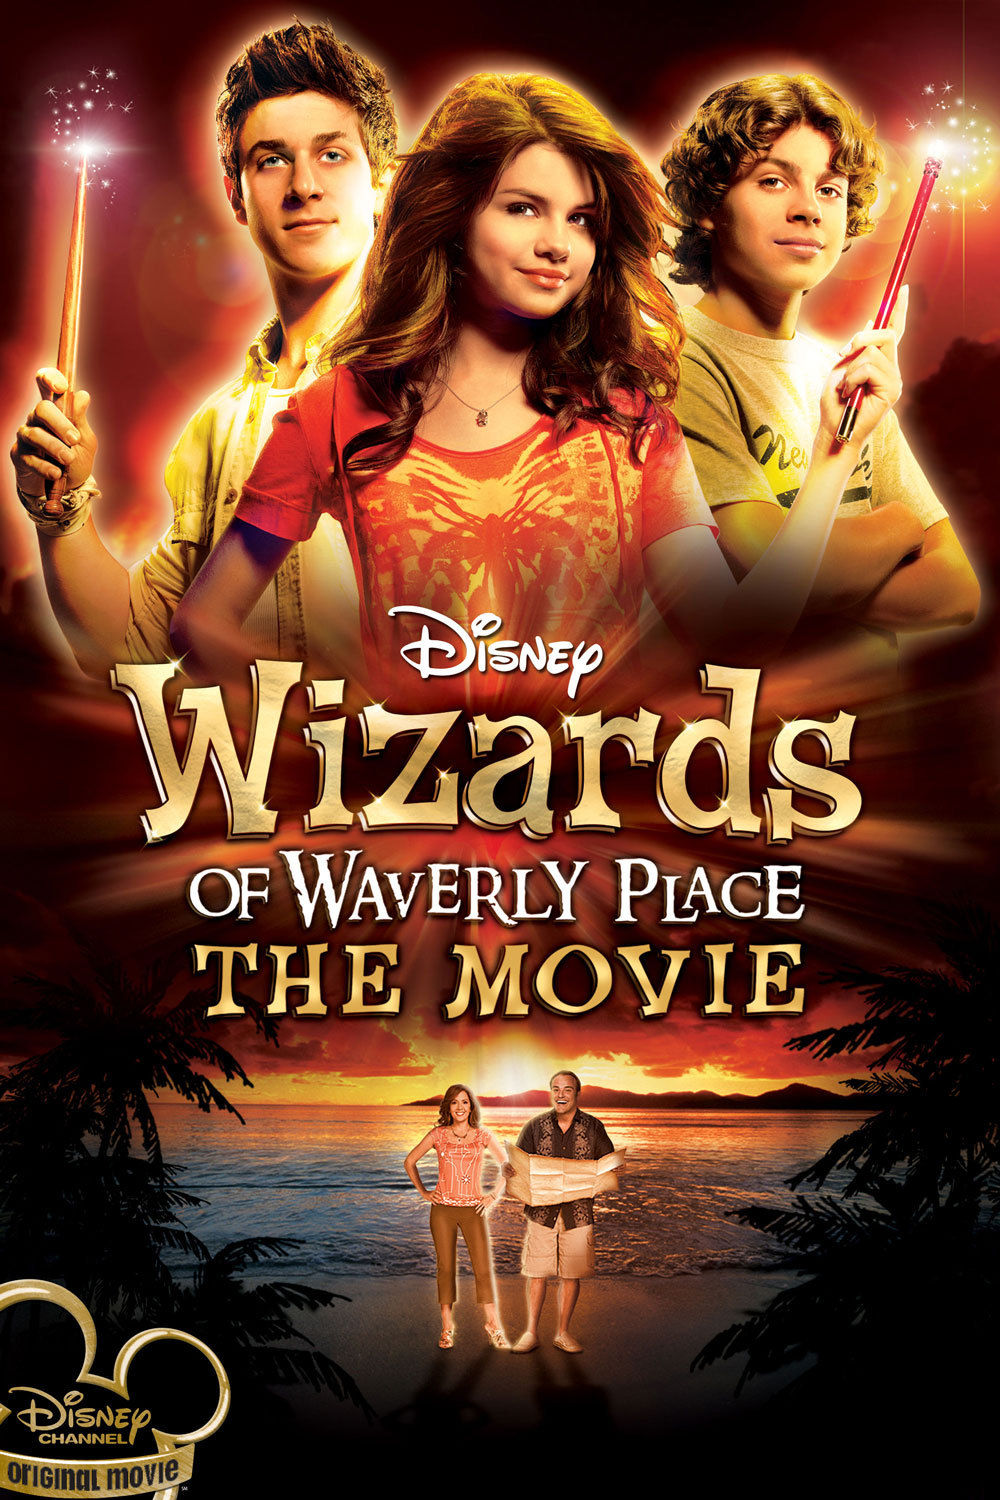 ดูหนังออนไลน์ฟรี Wizards of Waverly Place The Movie 2009 วิซาร์ดส ออฟ เวฟเวอรี่ เพลซ